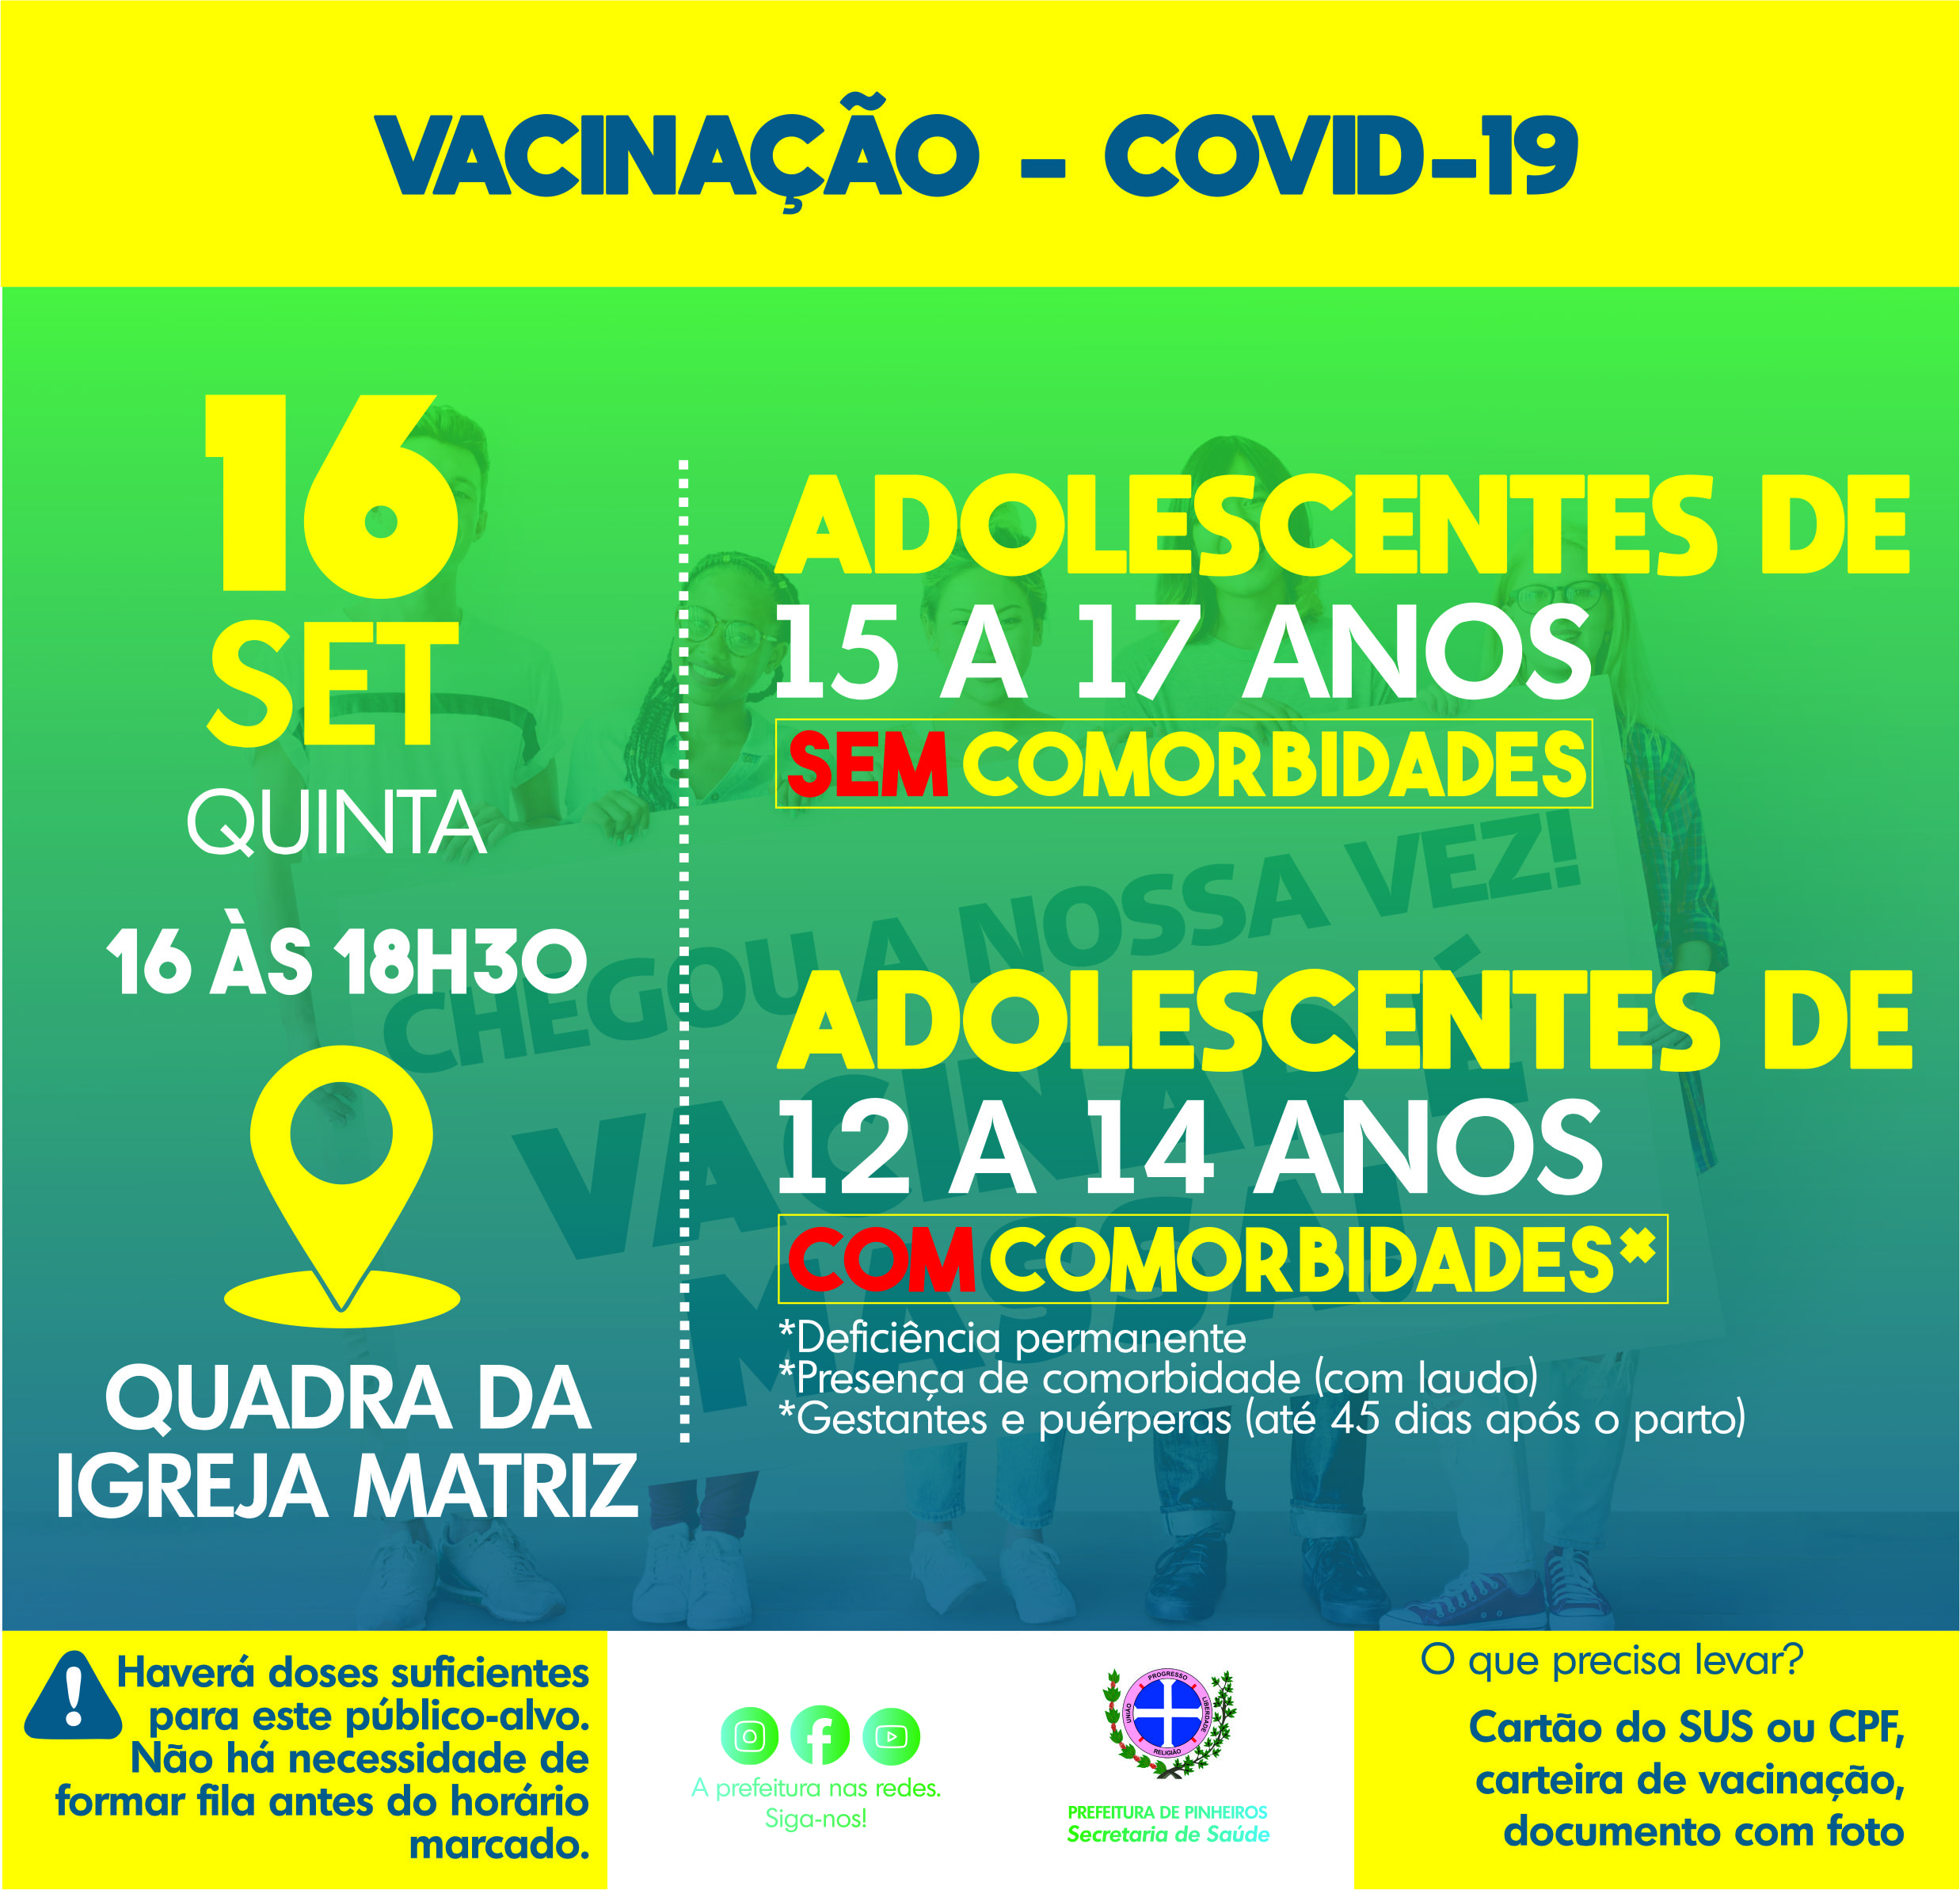 PINHEIROS INICIA APLICAÇÃO DE VACINA CONTRA A COVID-19 EM ADOLESCENTES